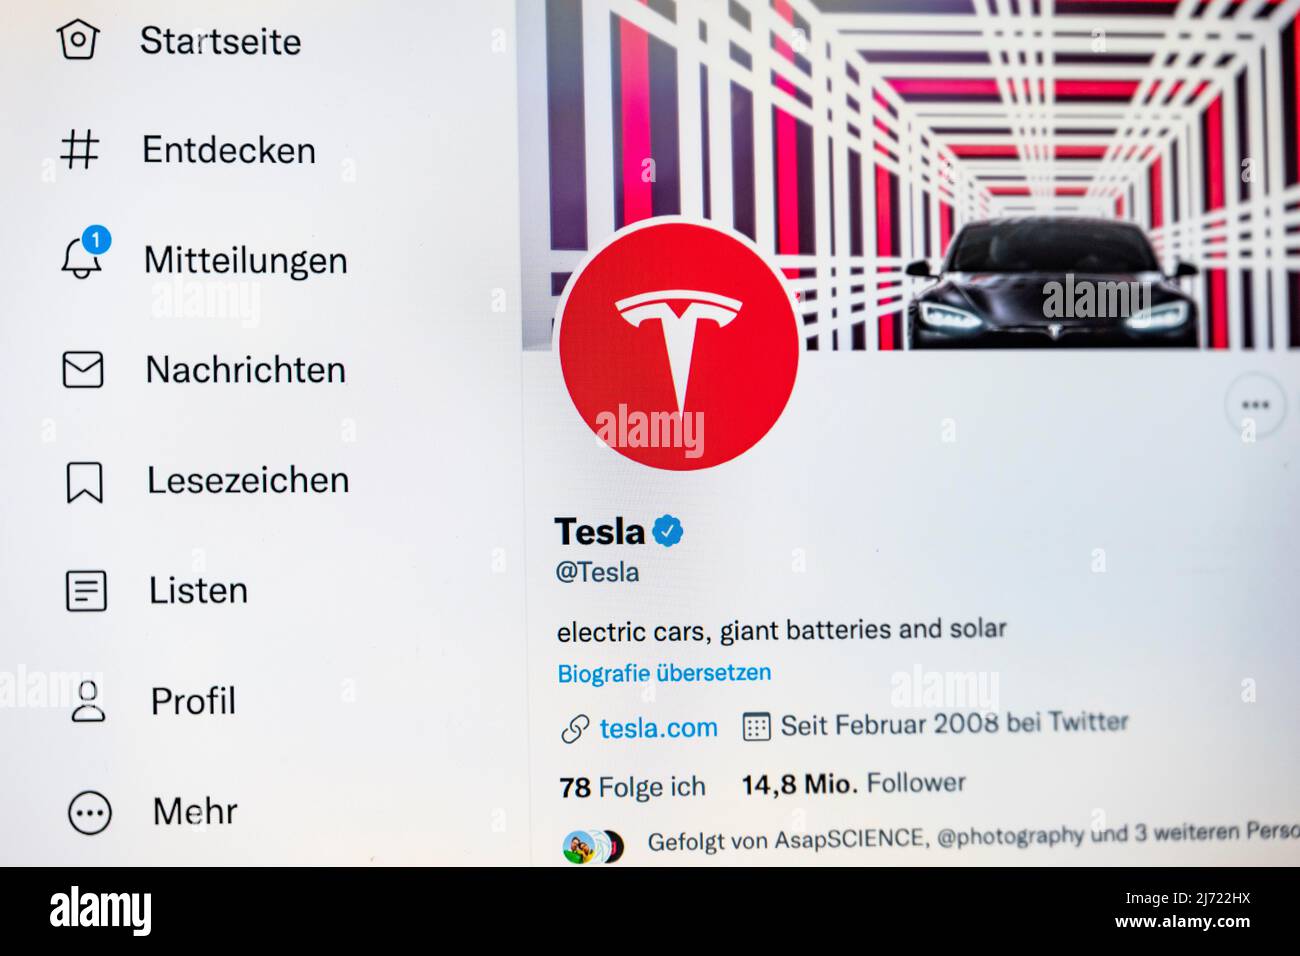 Twitter Seite des Unternehmen Tesla, Twitter, Soziales Netzwerk, Internet, Internetseite, Bildschirmfoto, dettaglio, Germania Foto Stock